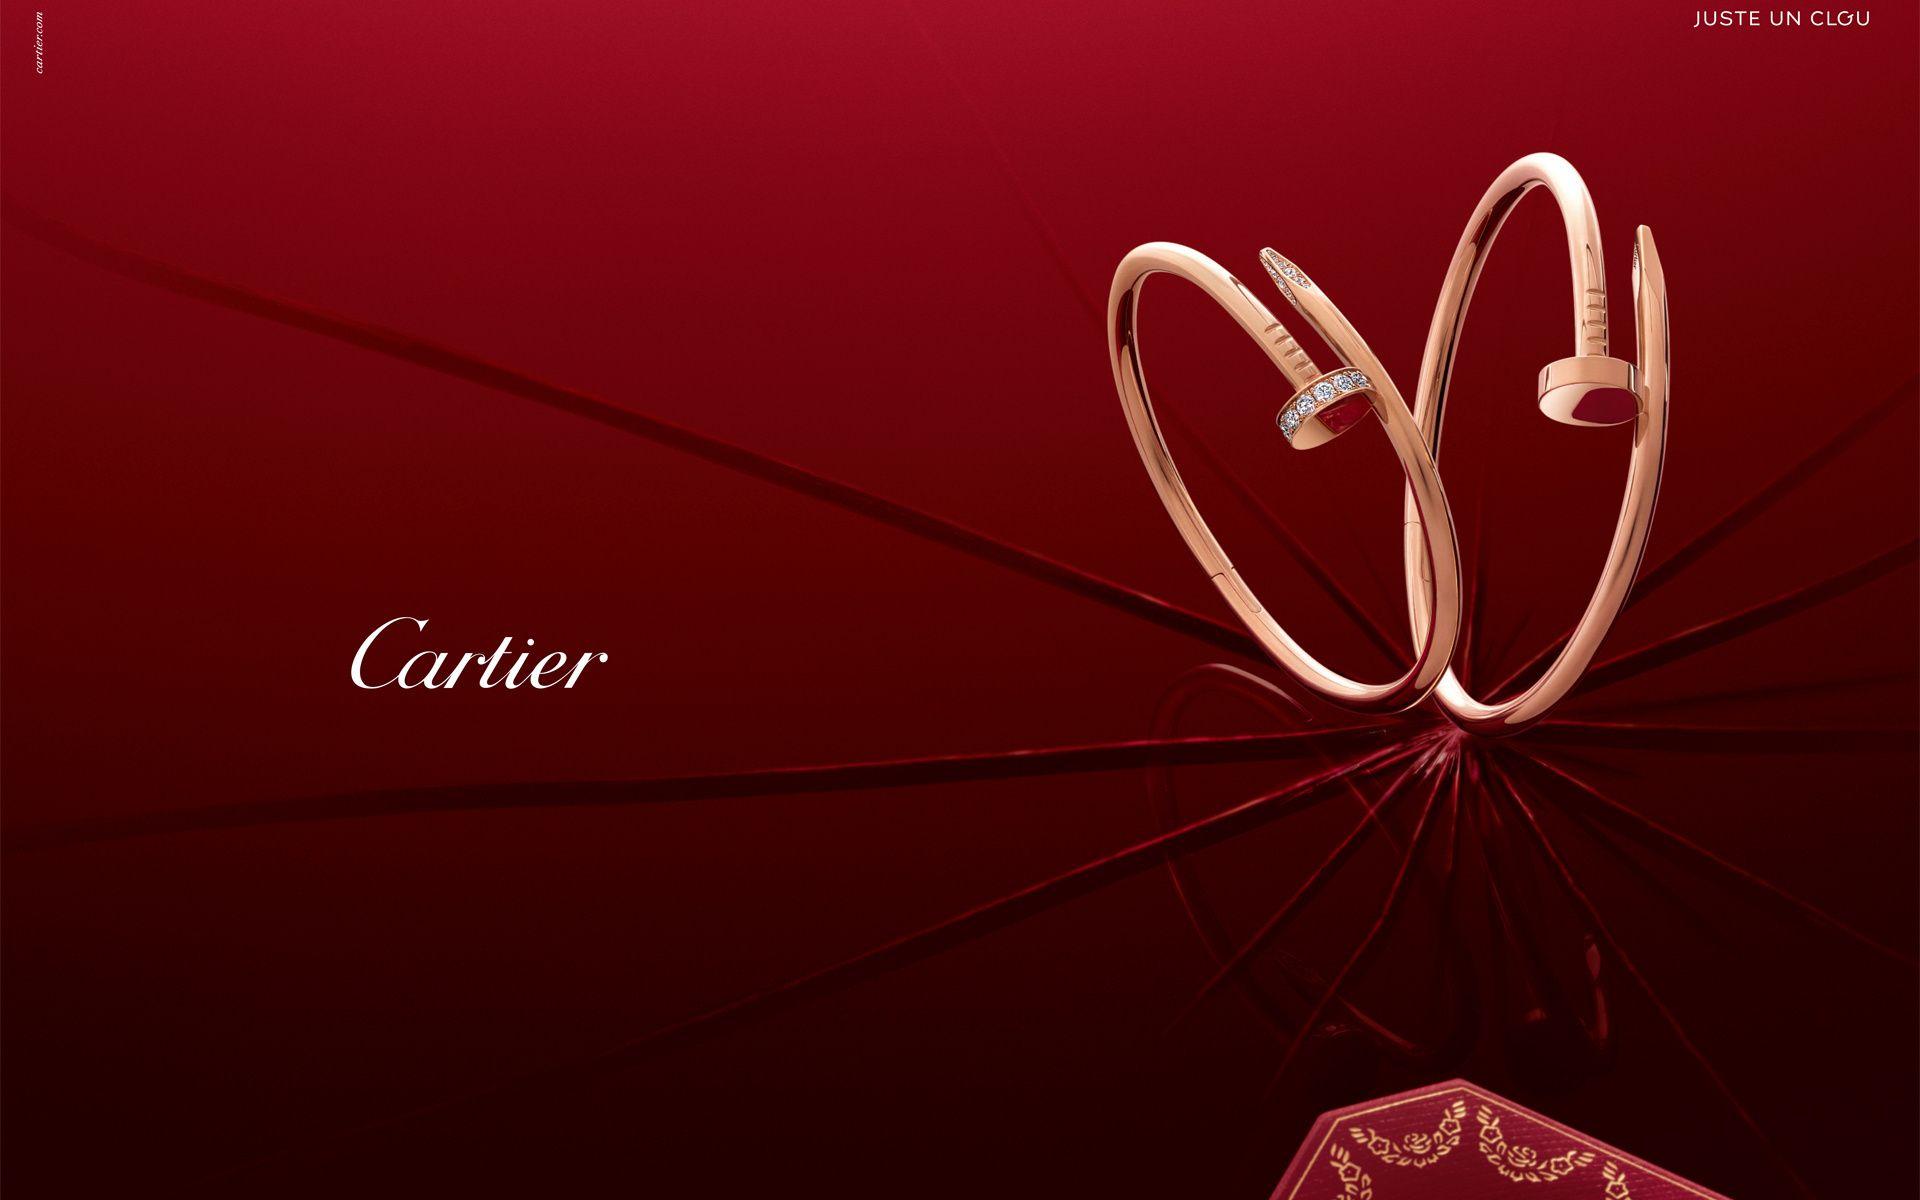 Cartier, Cartier Logo, Luxury Brands, Cartier Brands